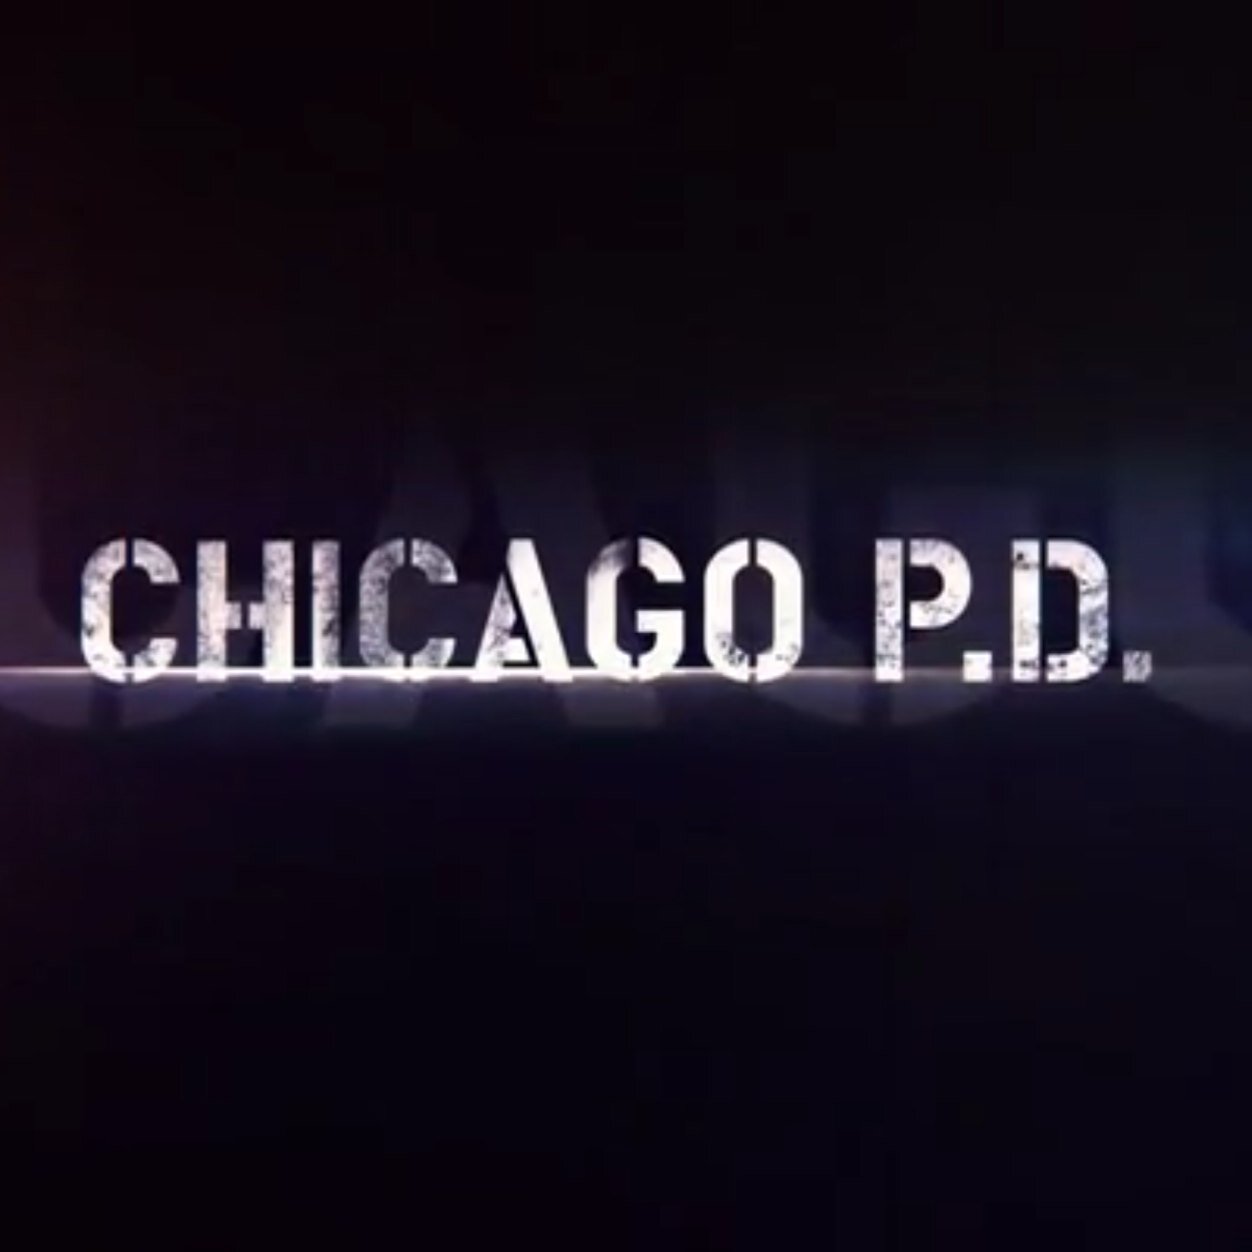 IG: ChicagoPD